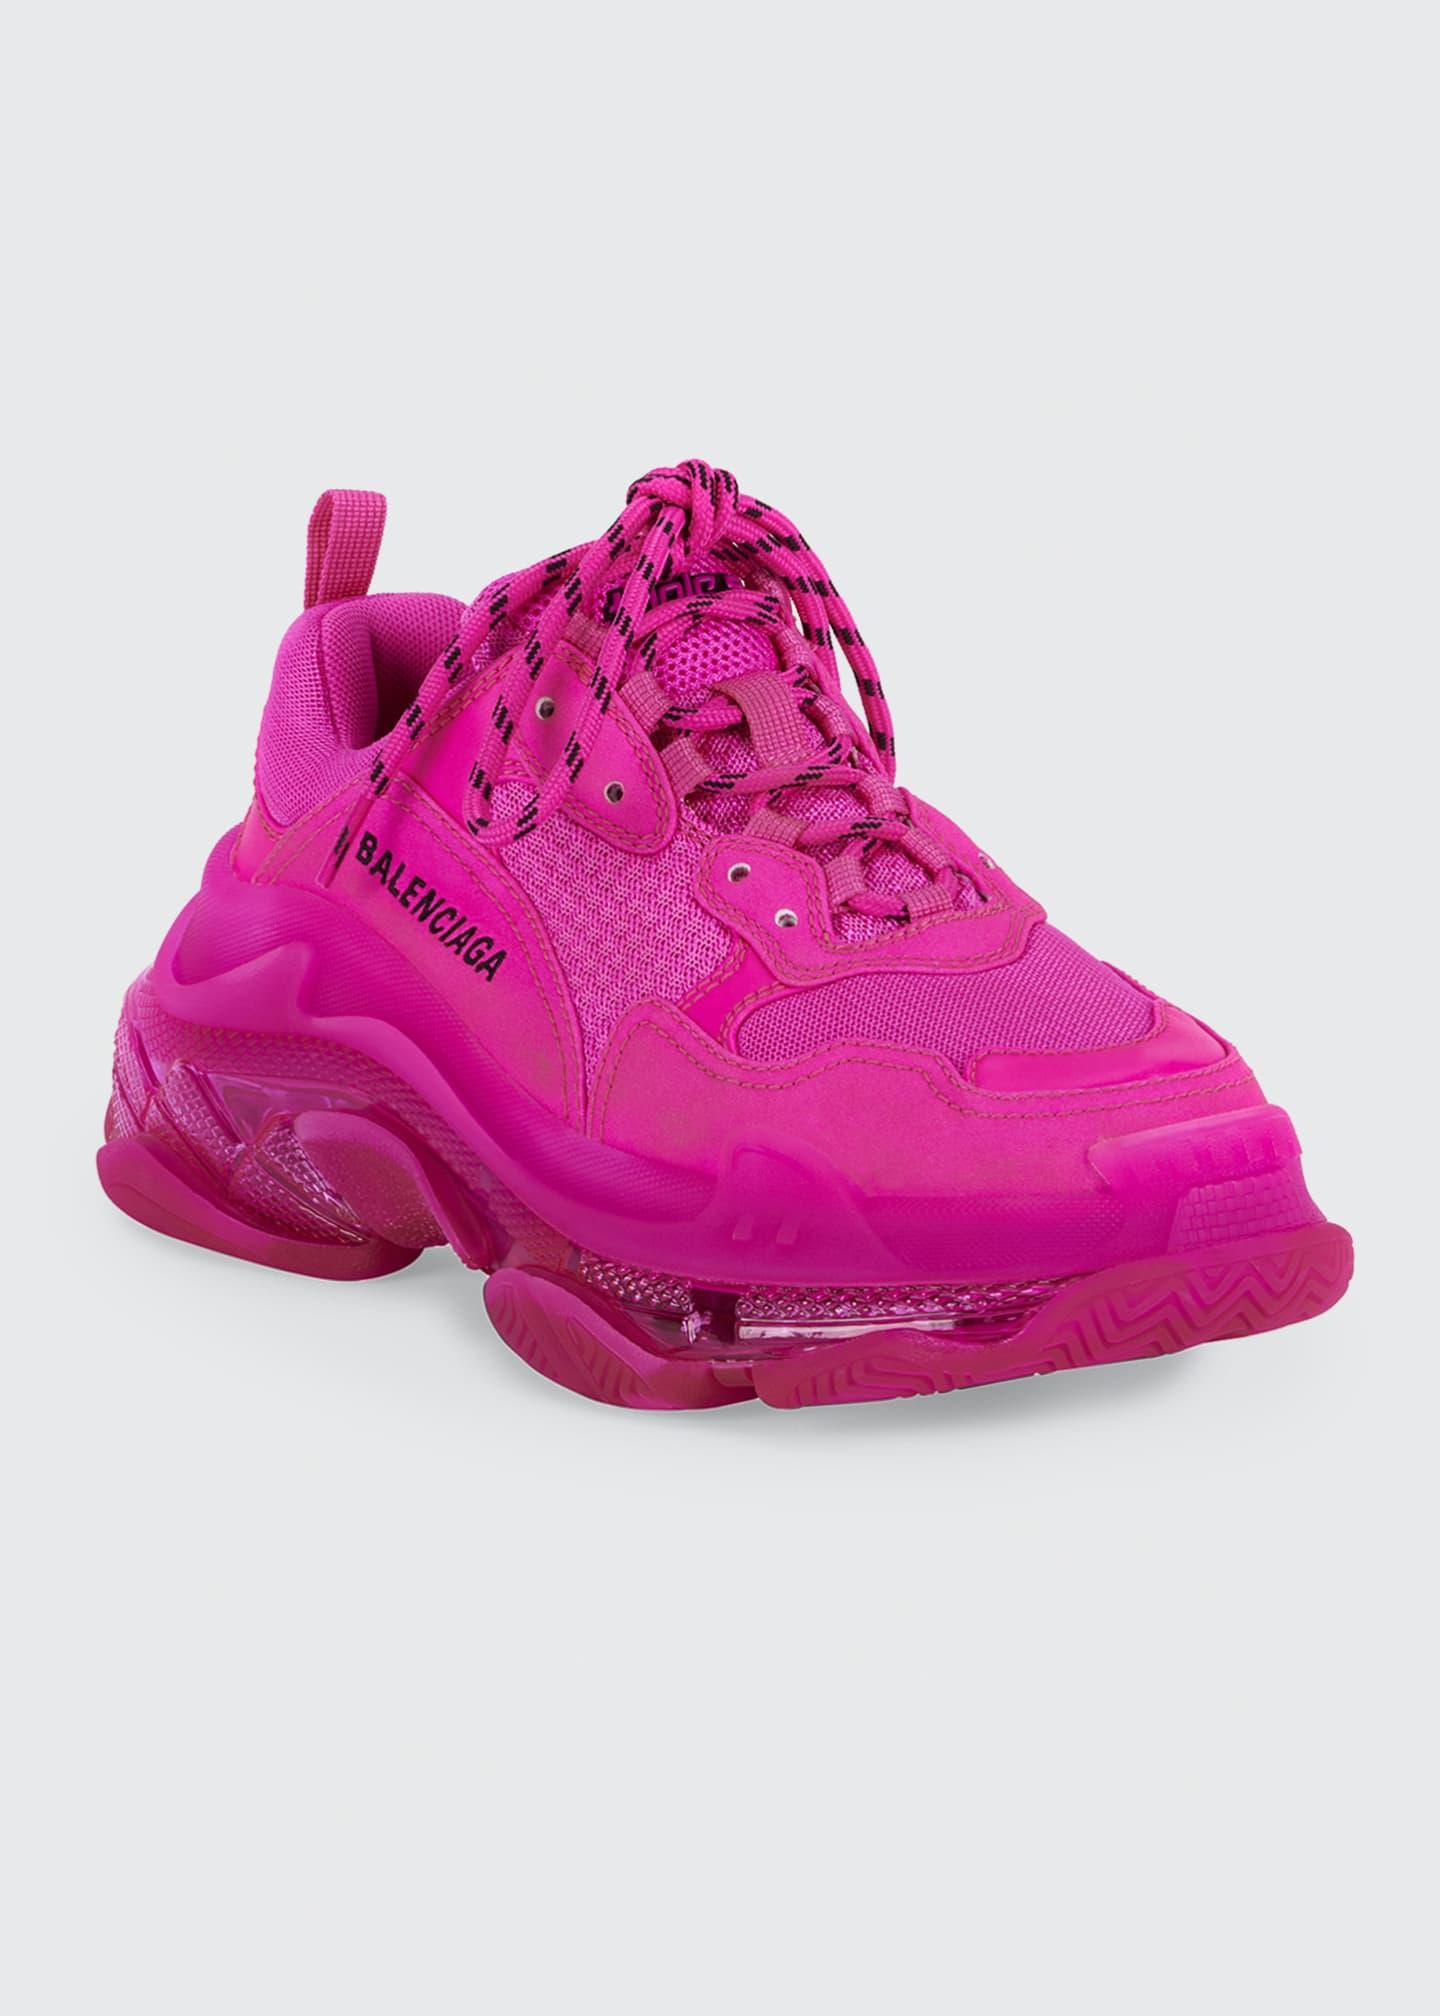 neon pink balenciaga sneakers